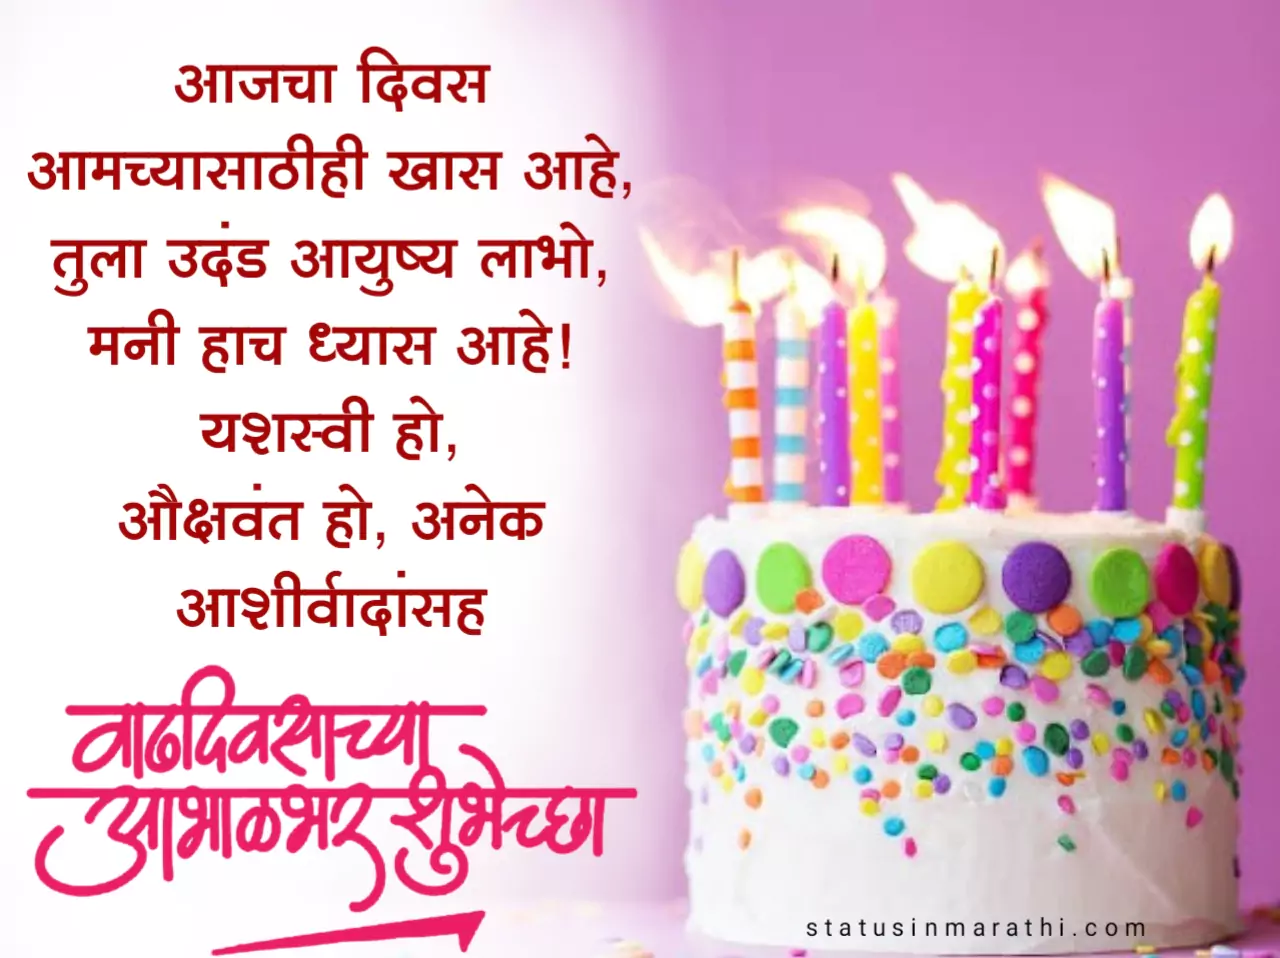 Birthday wishes in marathi